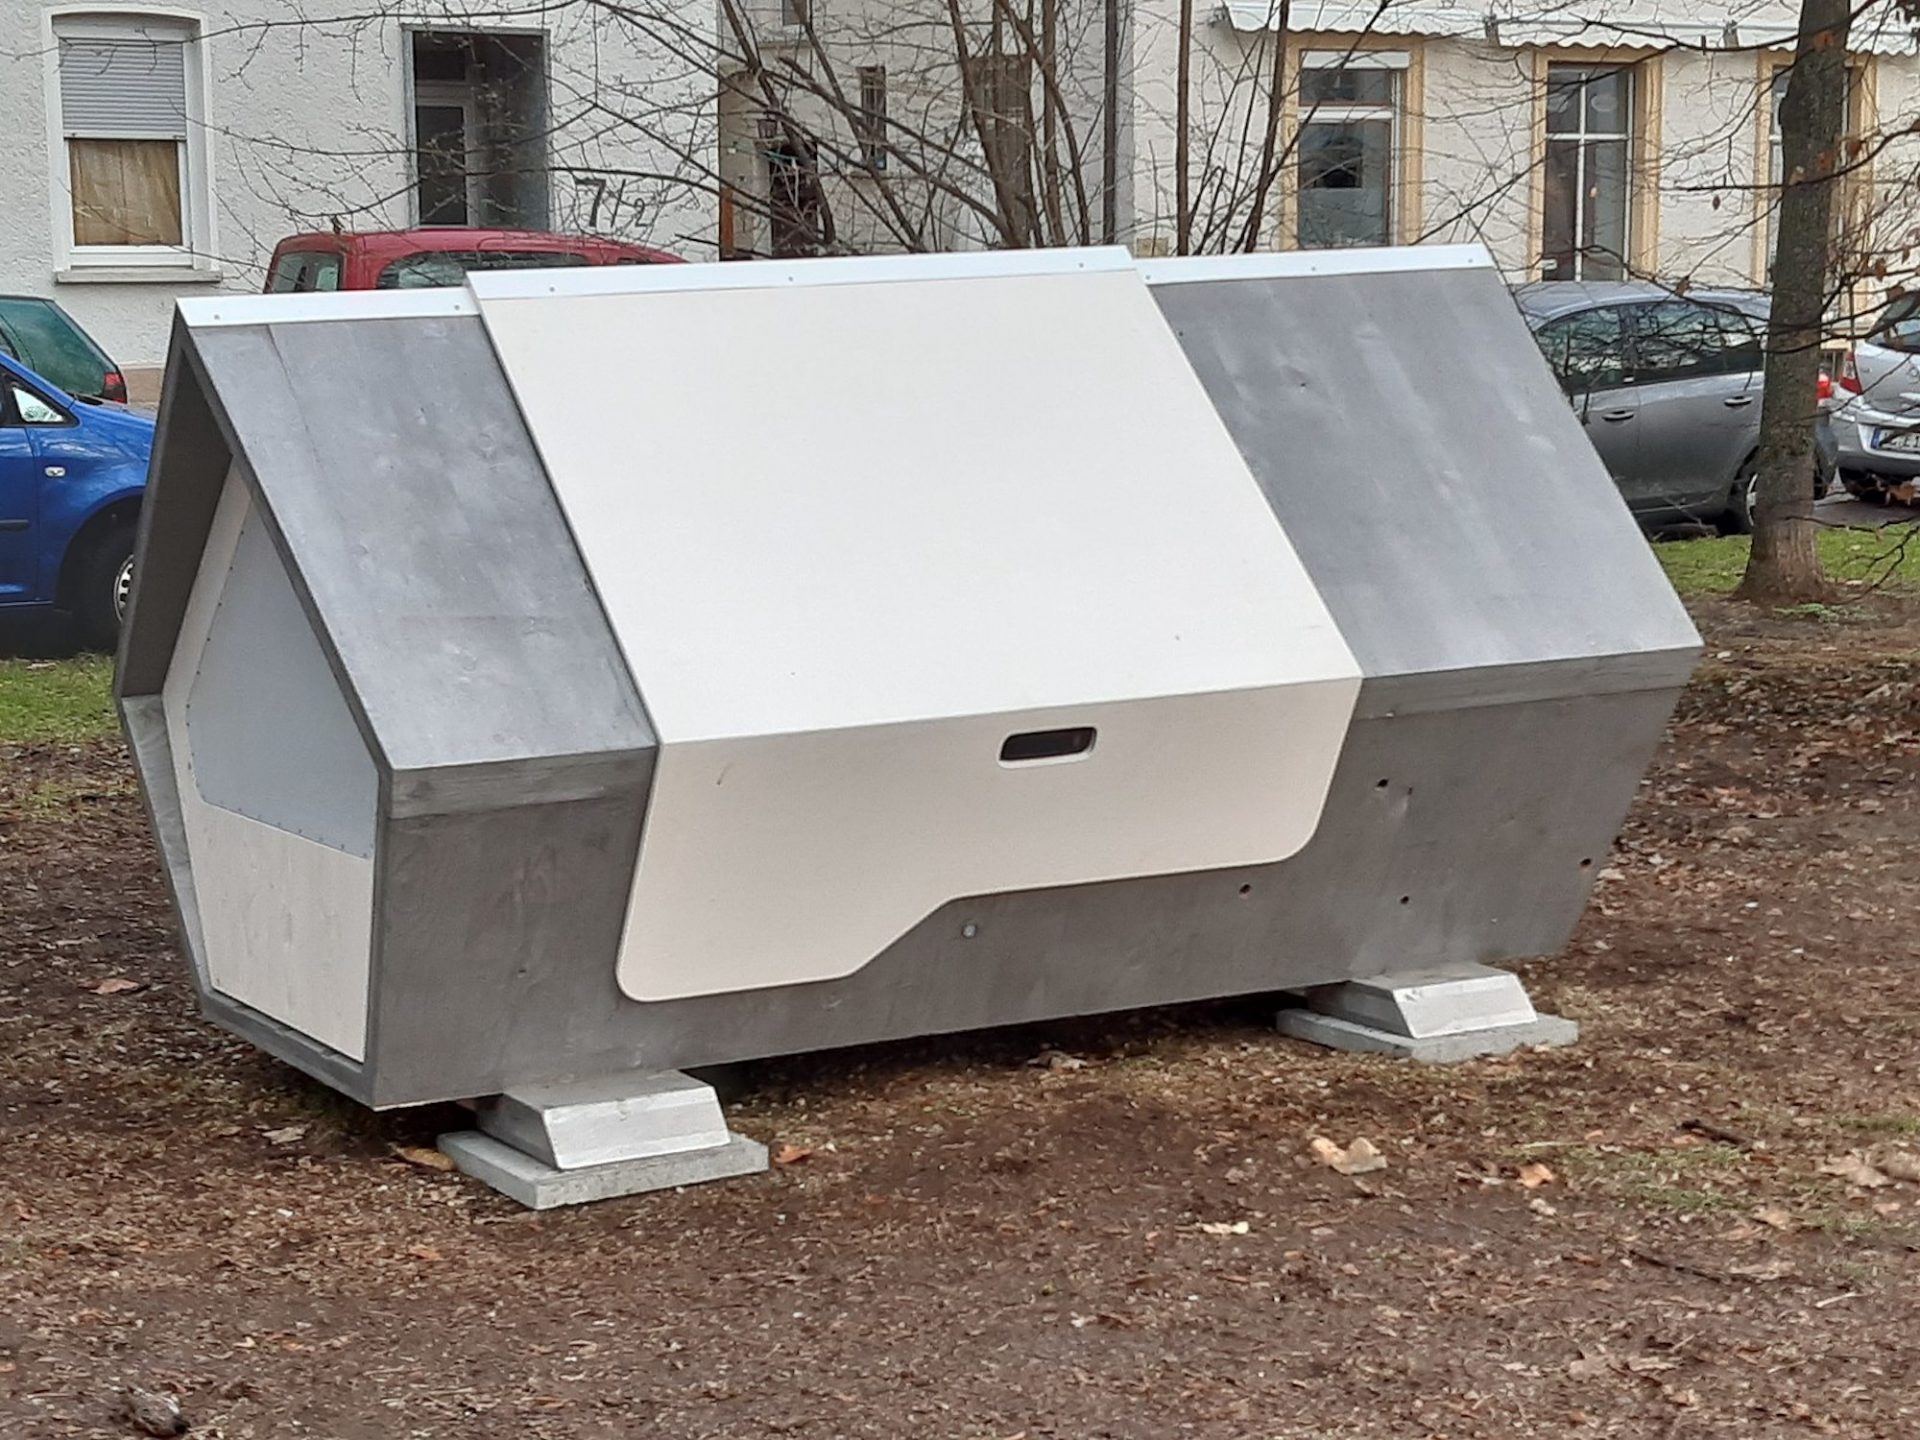 Ulm Nest : des capsules de sommeil pour protéger les sans-abri du froid